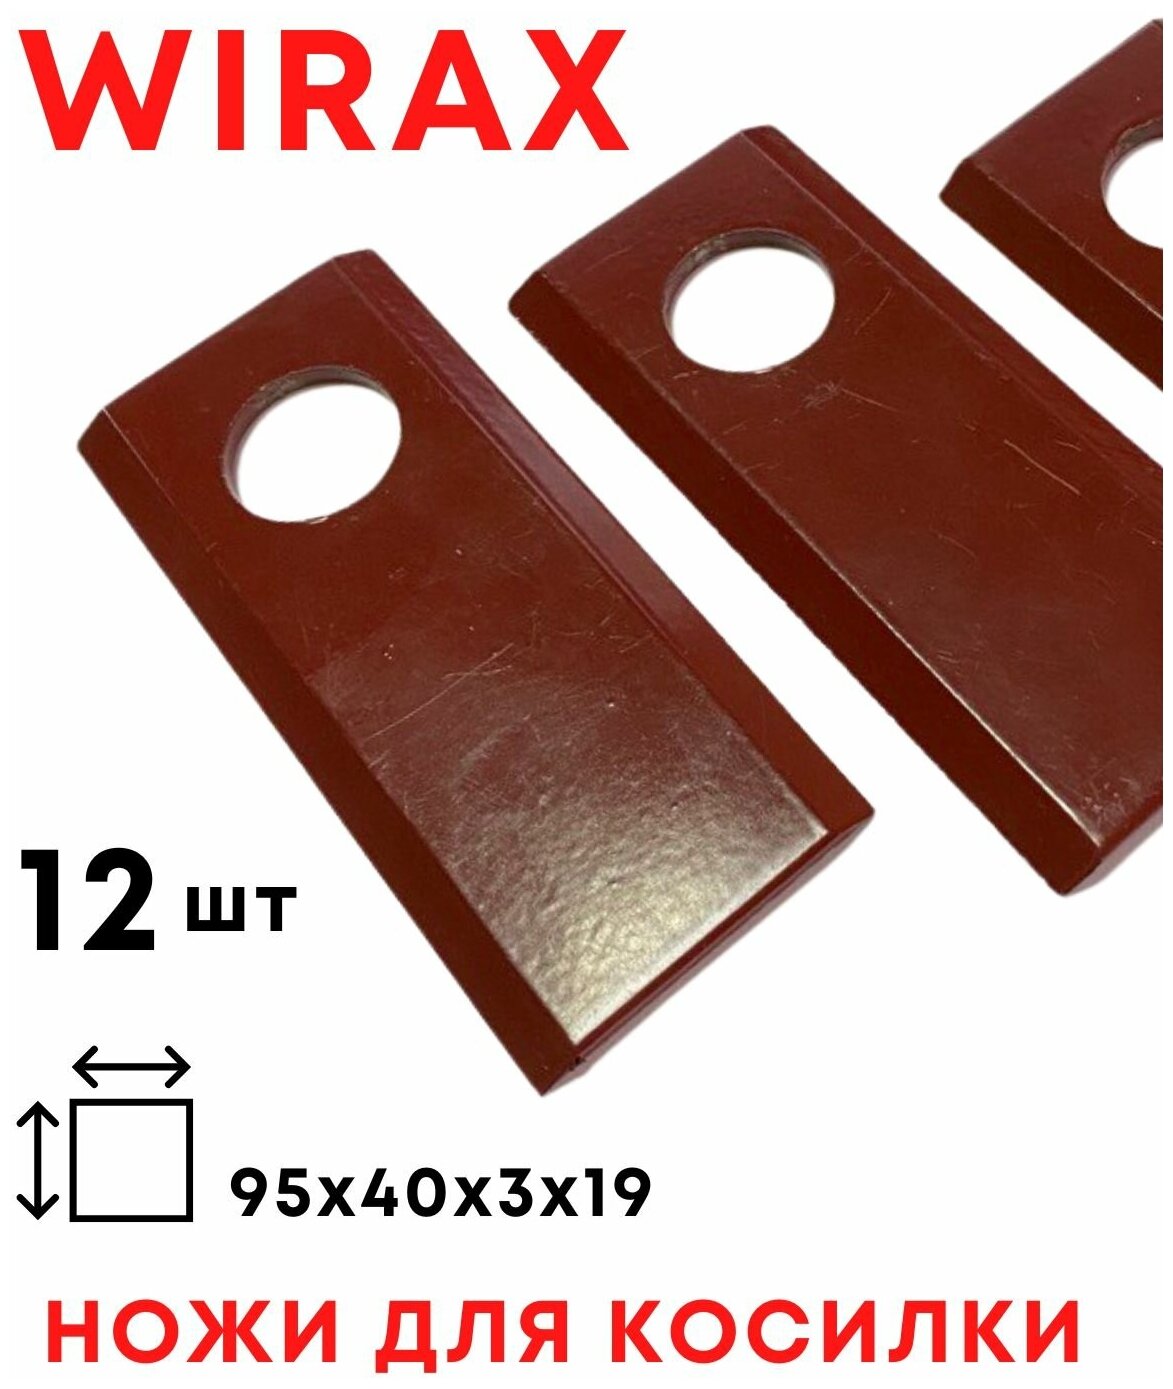 Ножи на косилку Виракс ножи для польской роторной косилки WIRAX / 12 шт / комплект